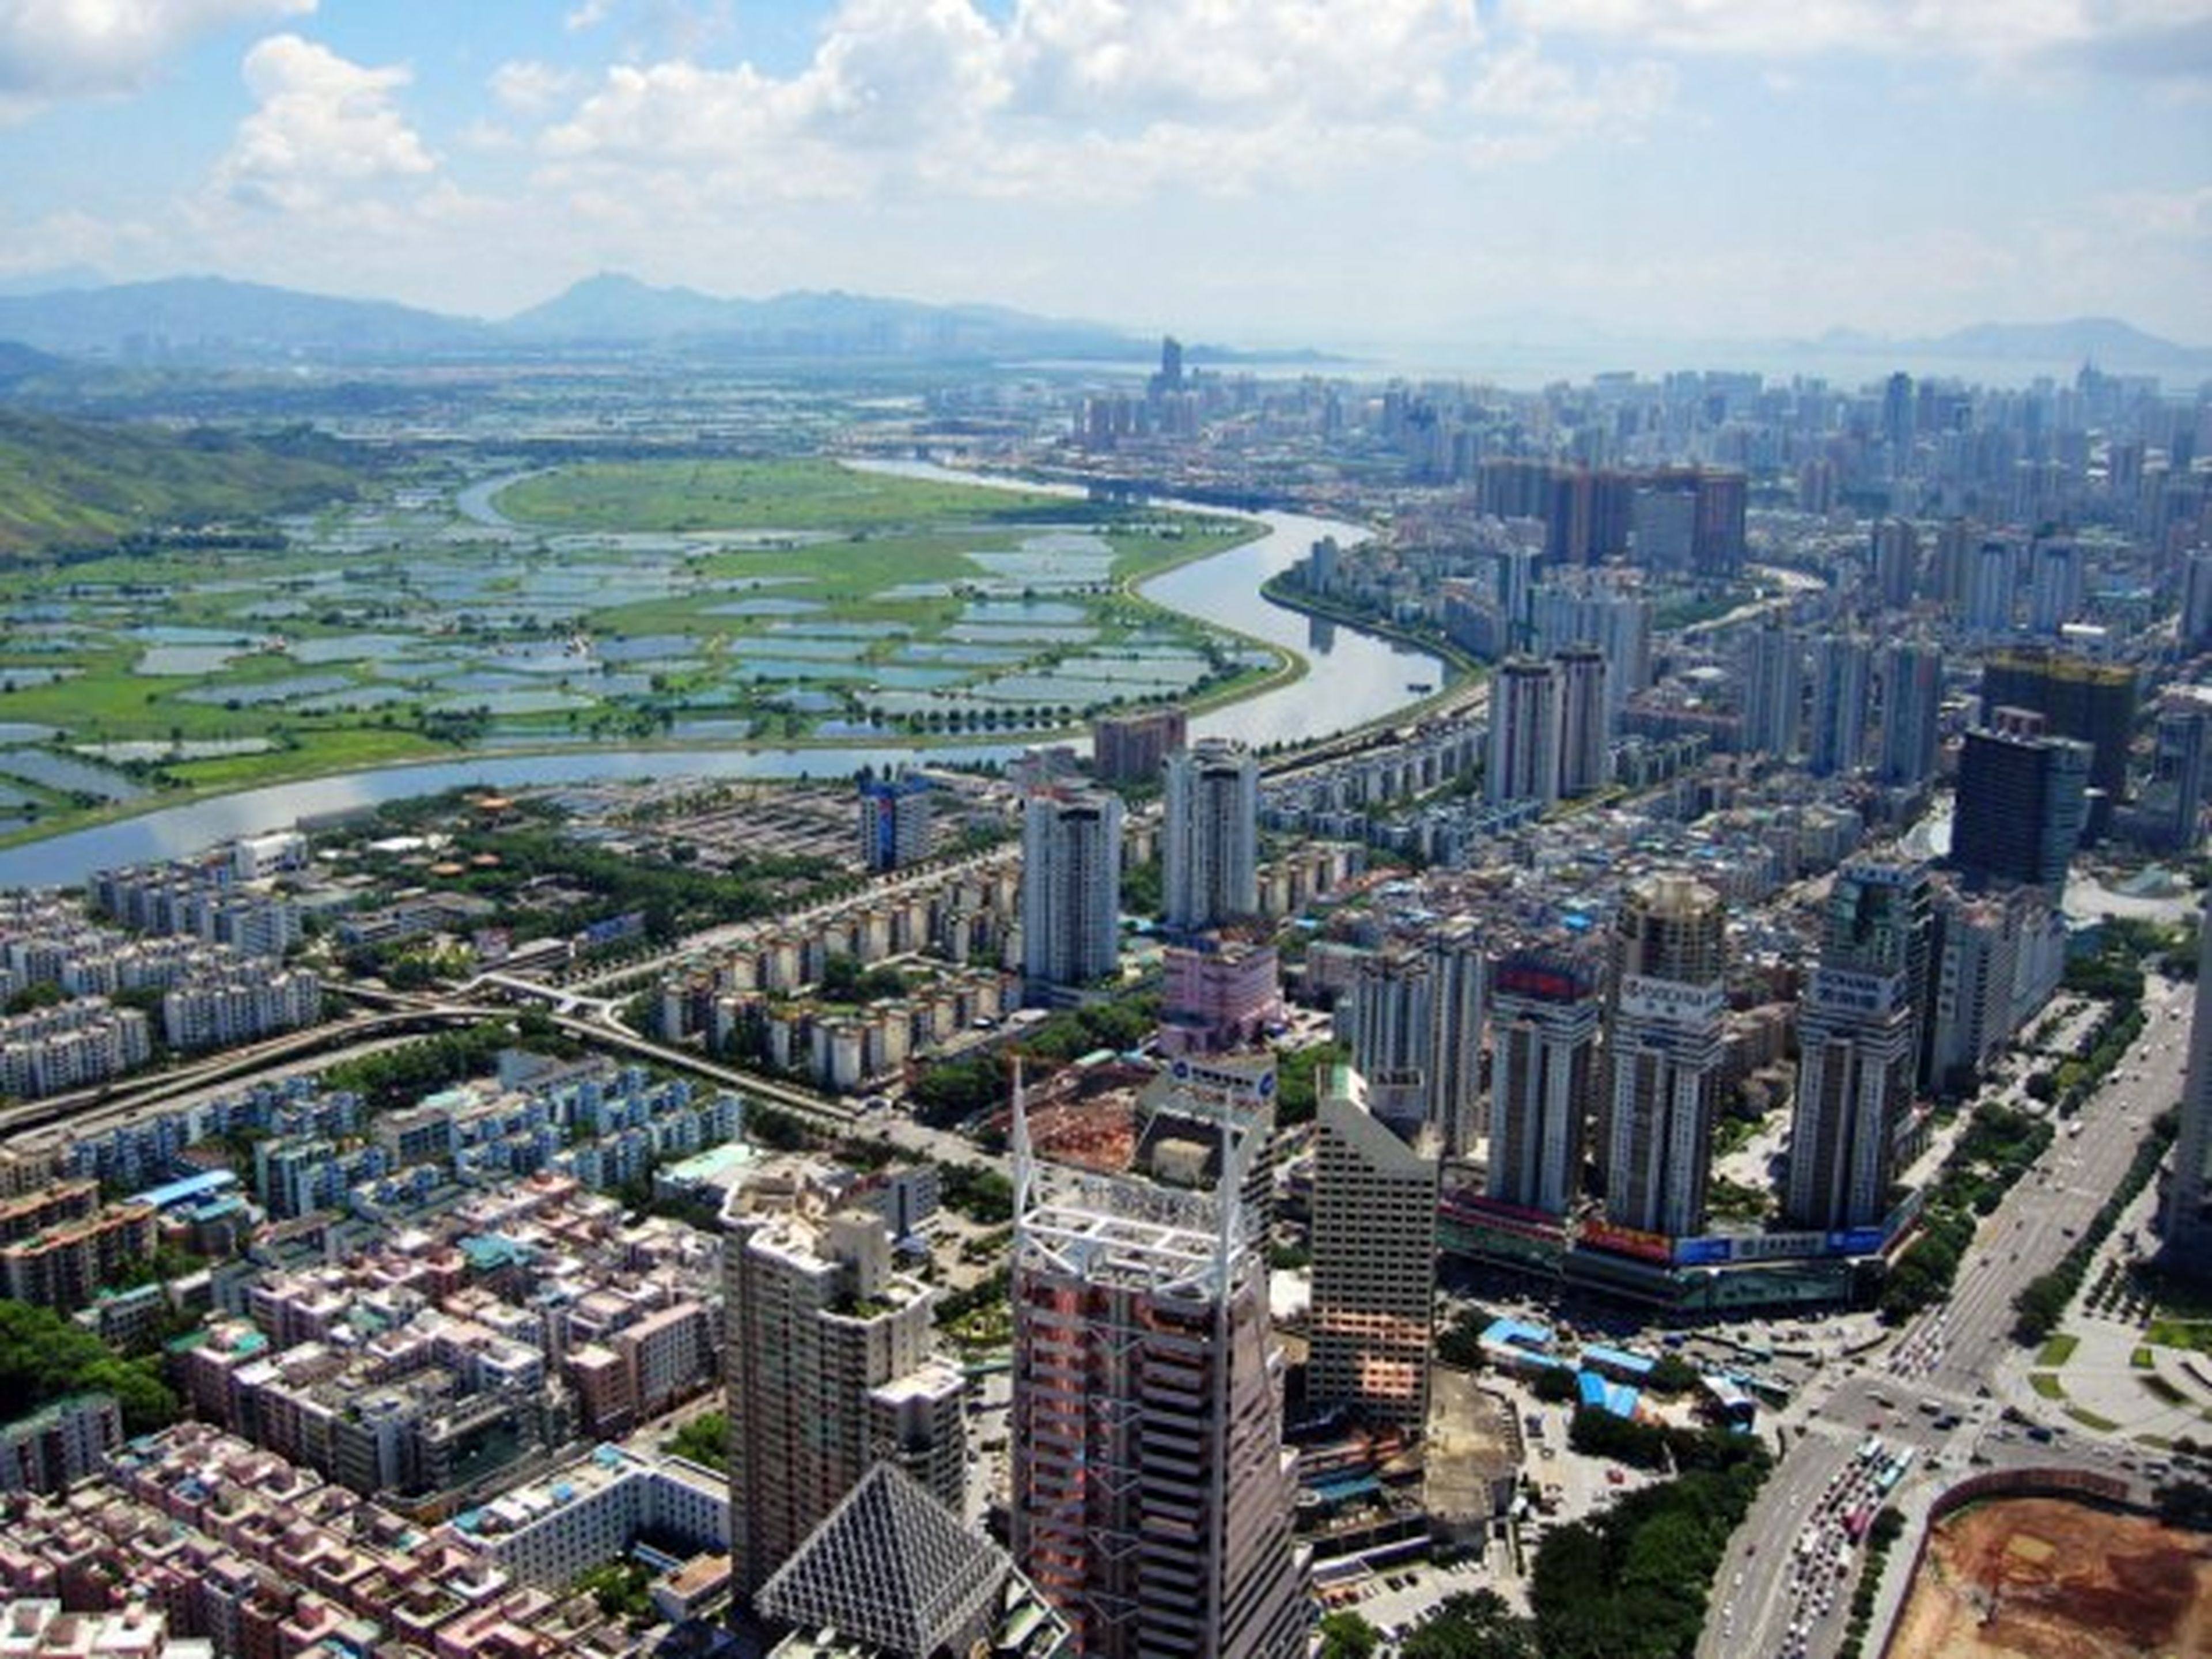 Shenzhen silicon valley